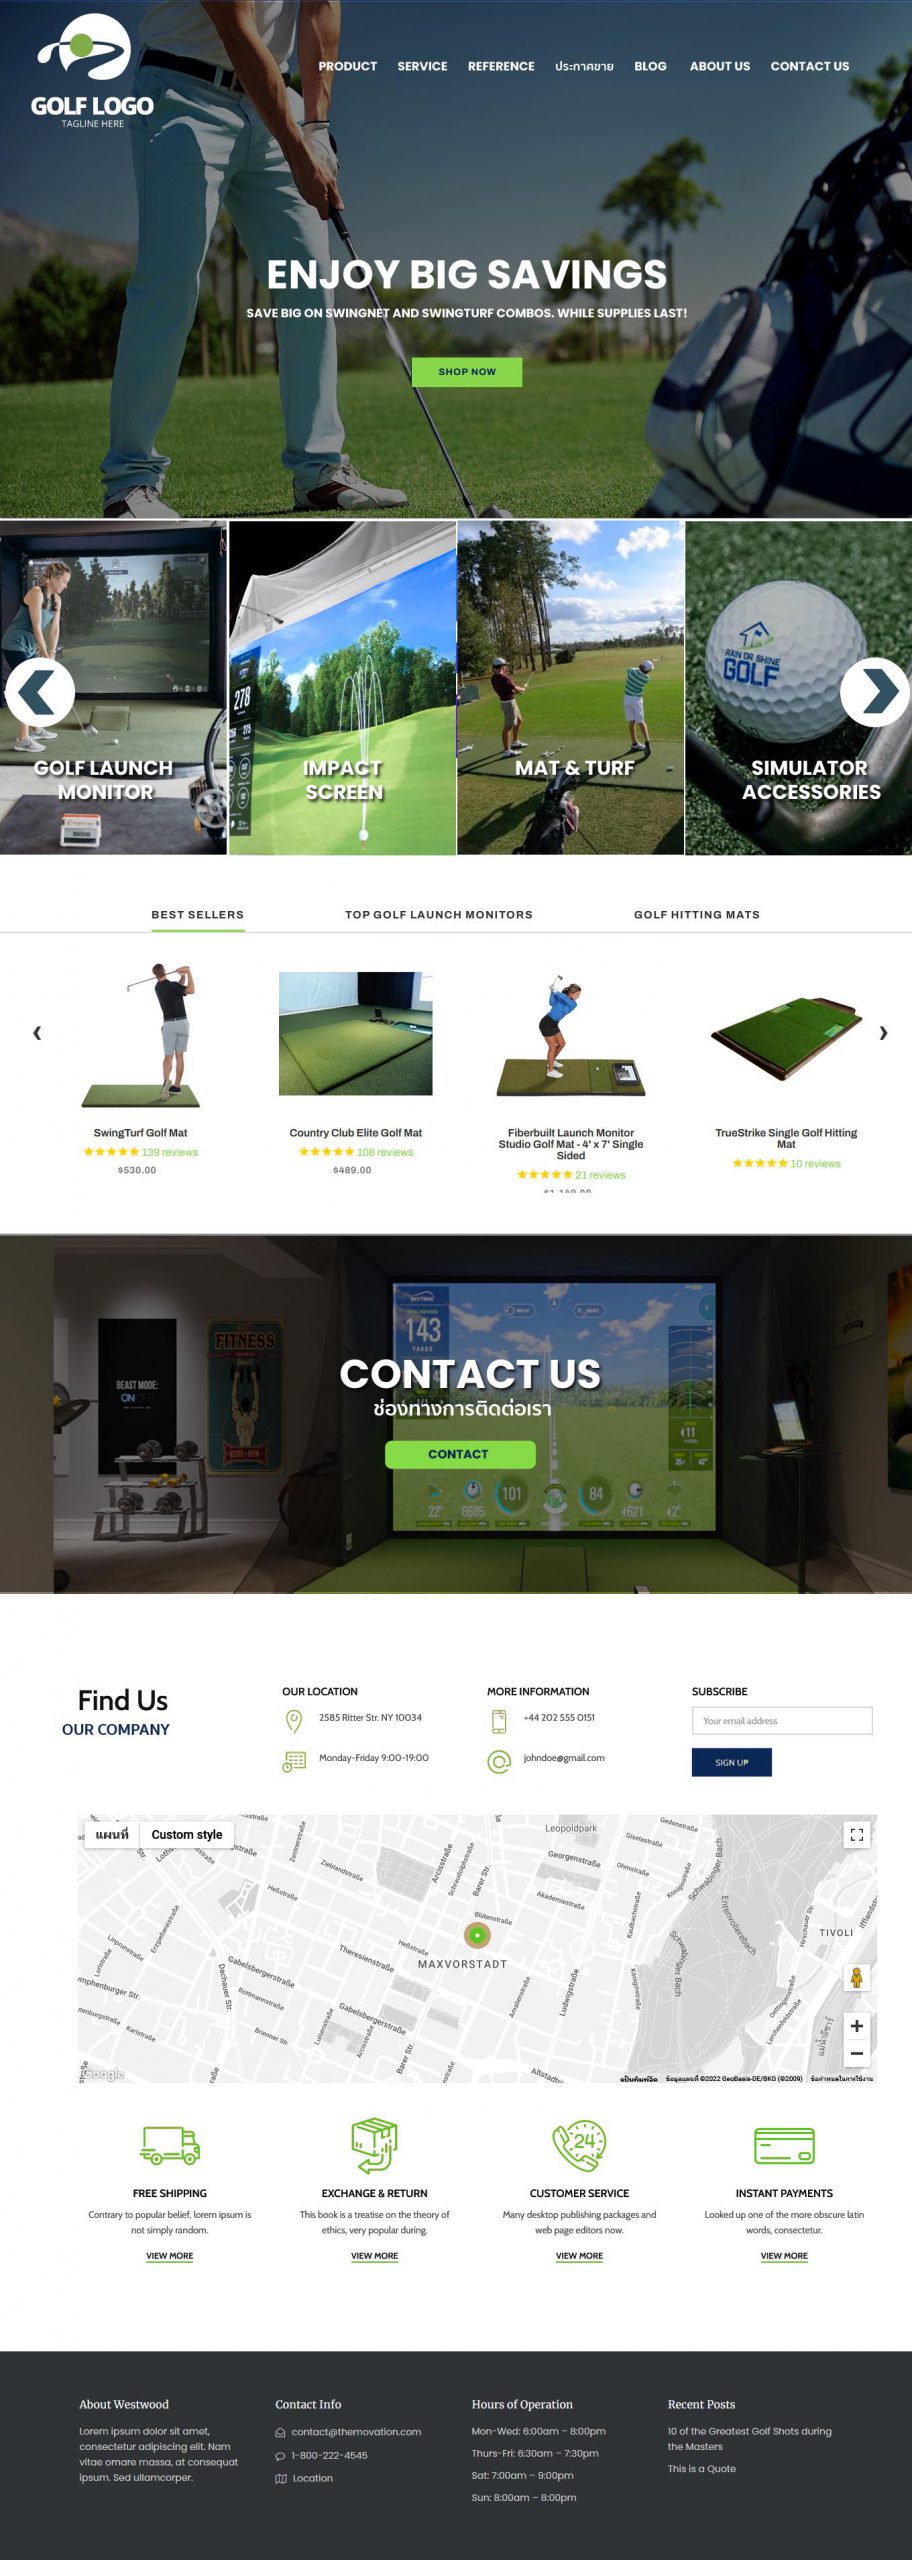 บ้านทำเว็บ รับทำเว็บบริษัท เว็บจำหน่าย Software สำหรับโปรแกรม Golf Simulator